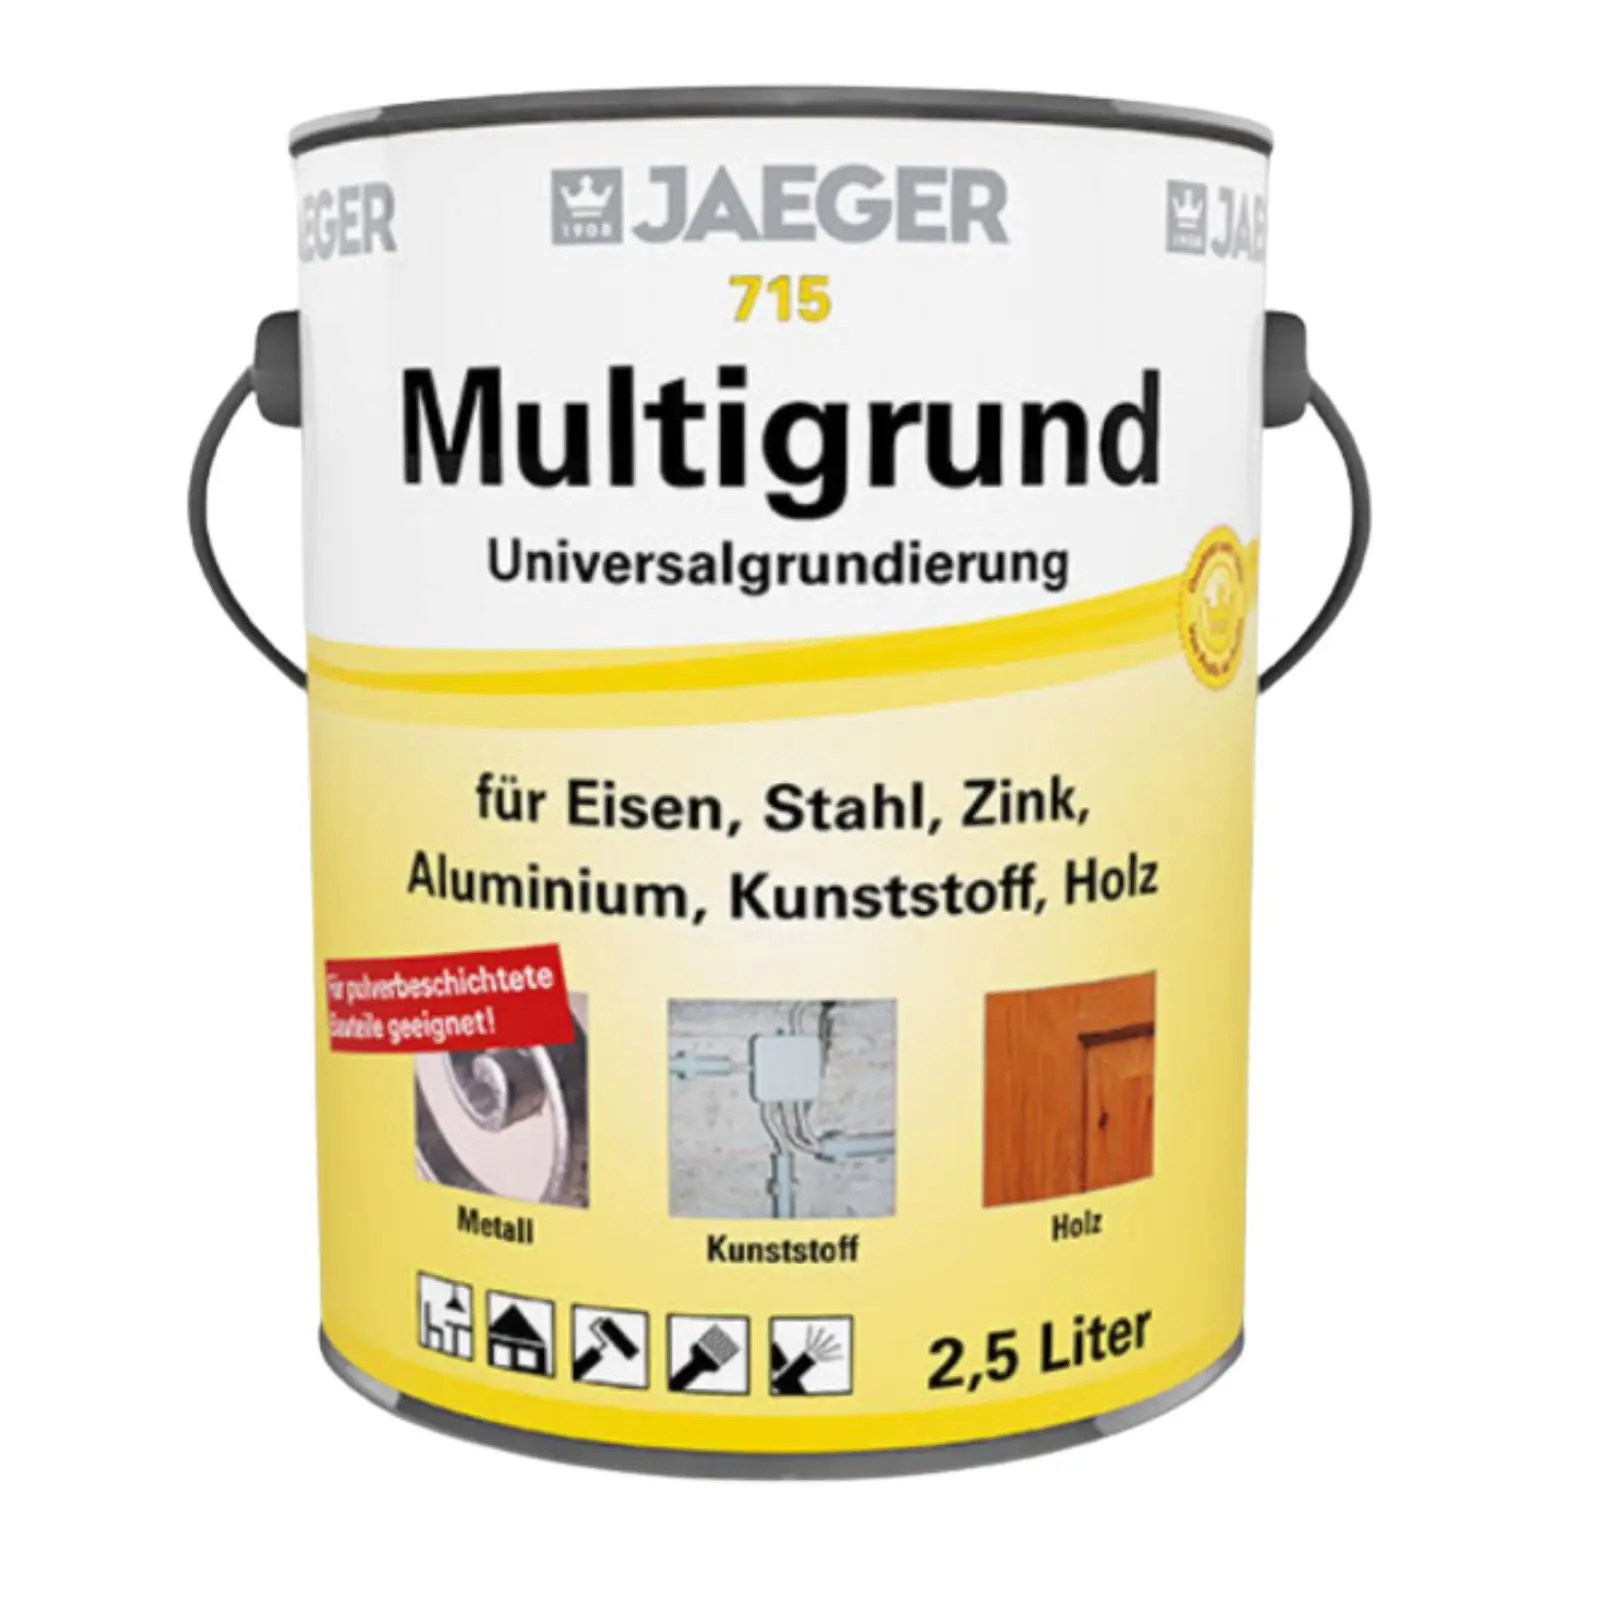 Jaeger Multigrund Universalgrundierung 715, 375ml, grau